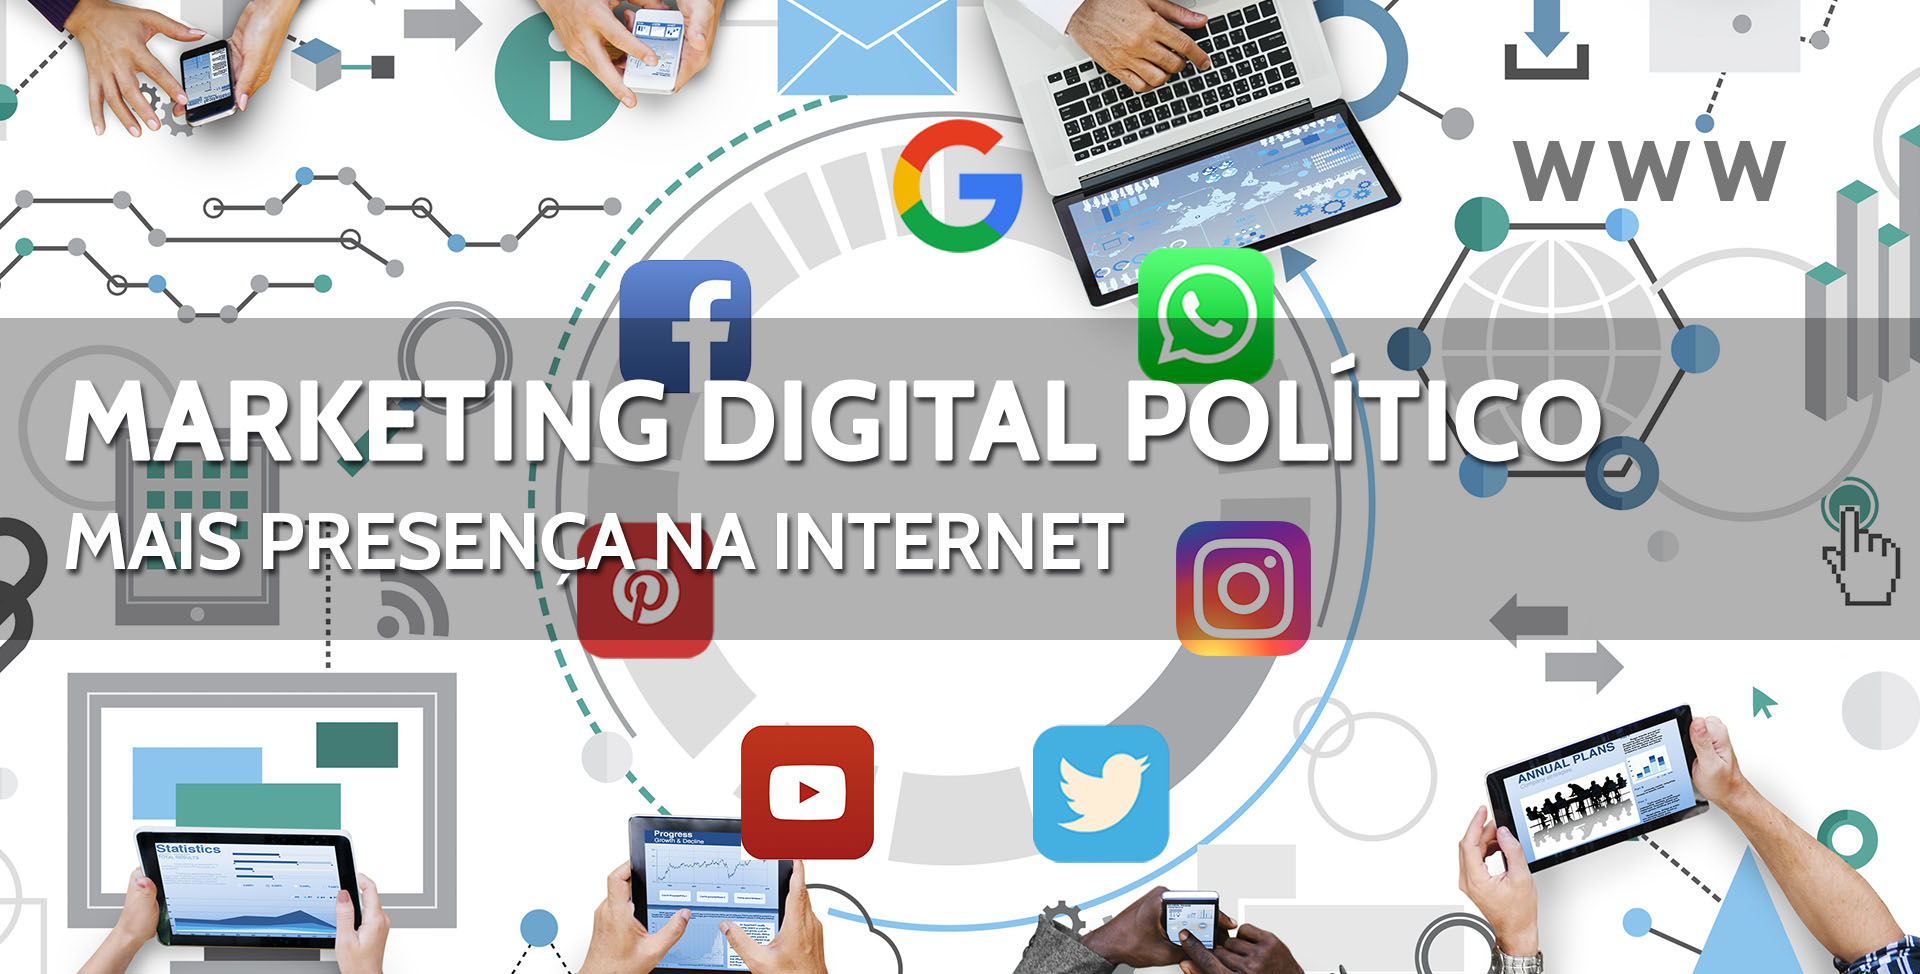 HDG - Serviços de Internet - Marketing Político